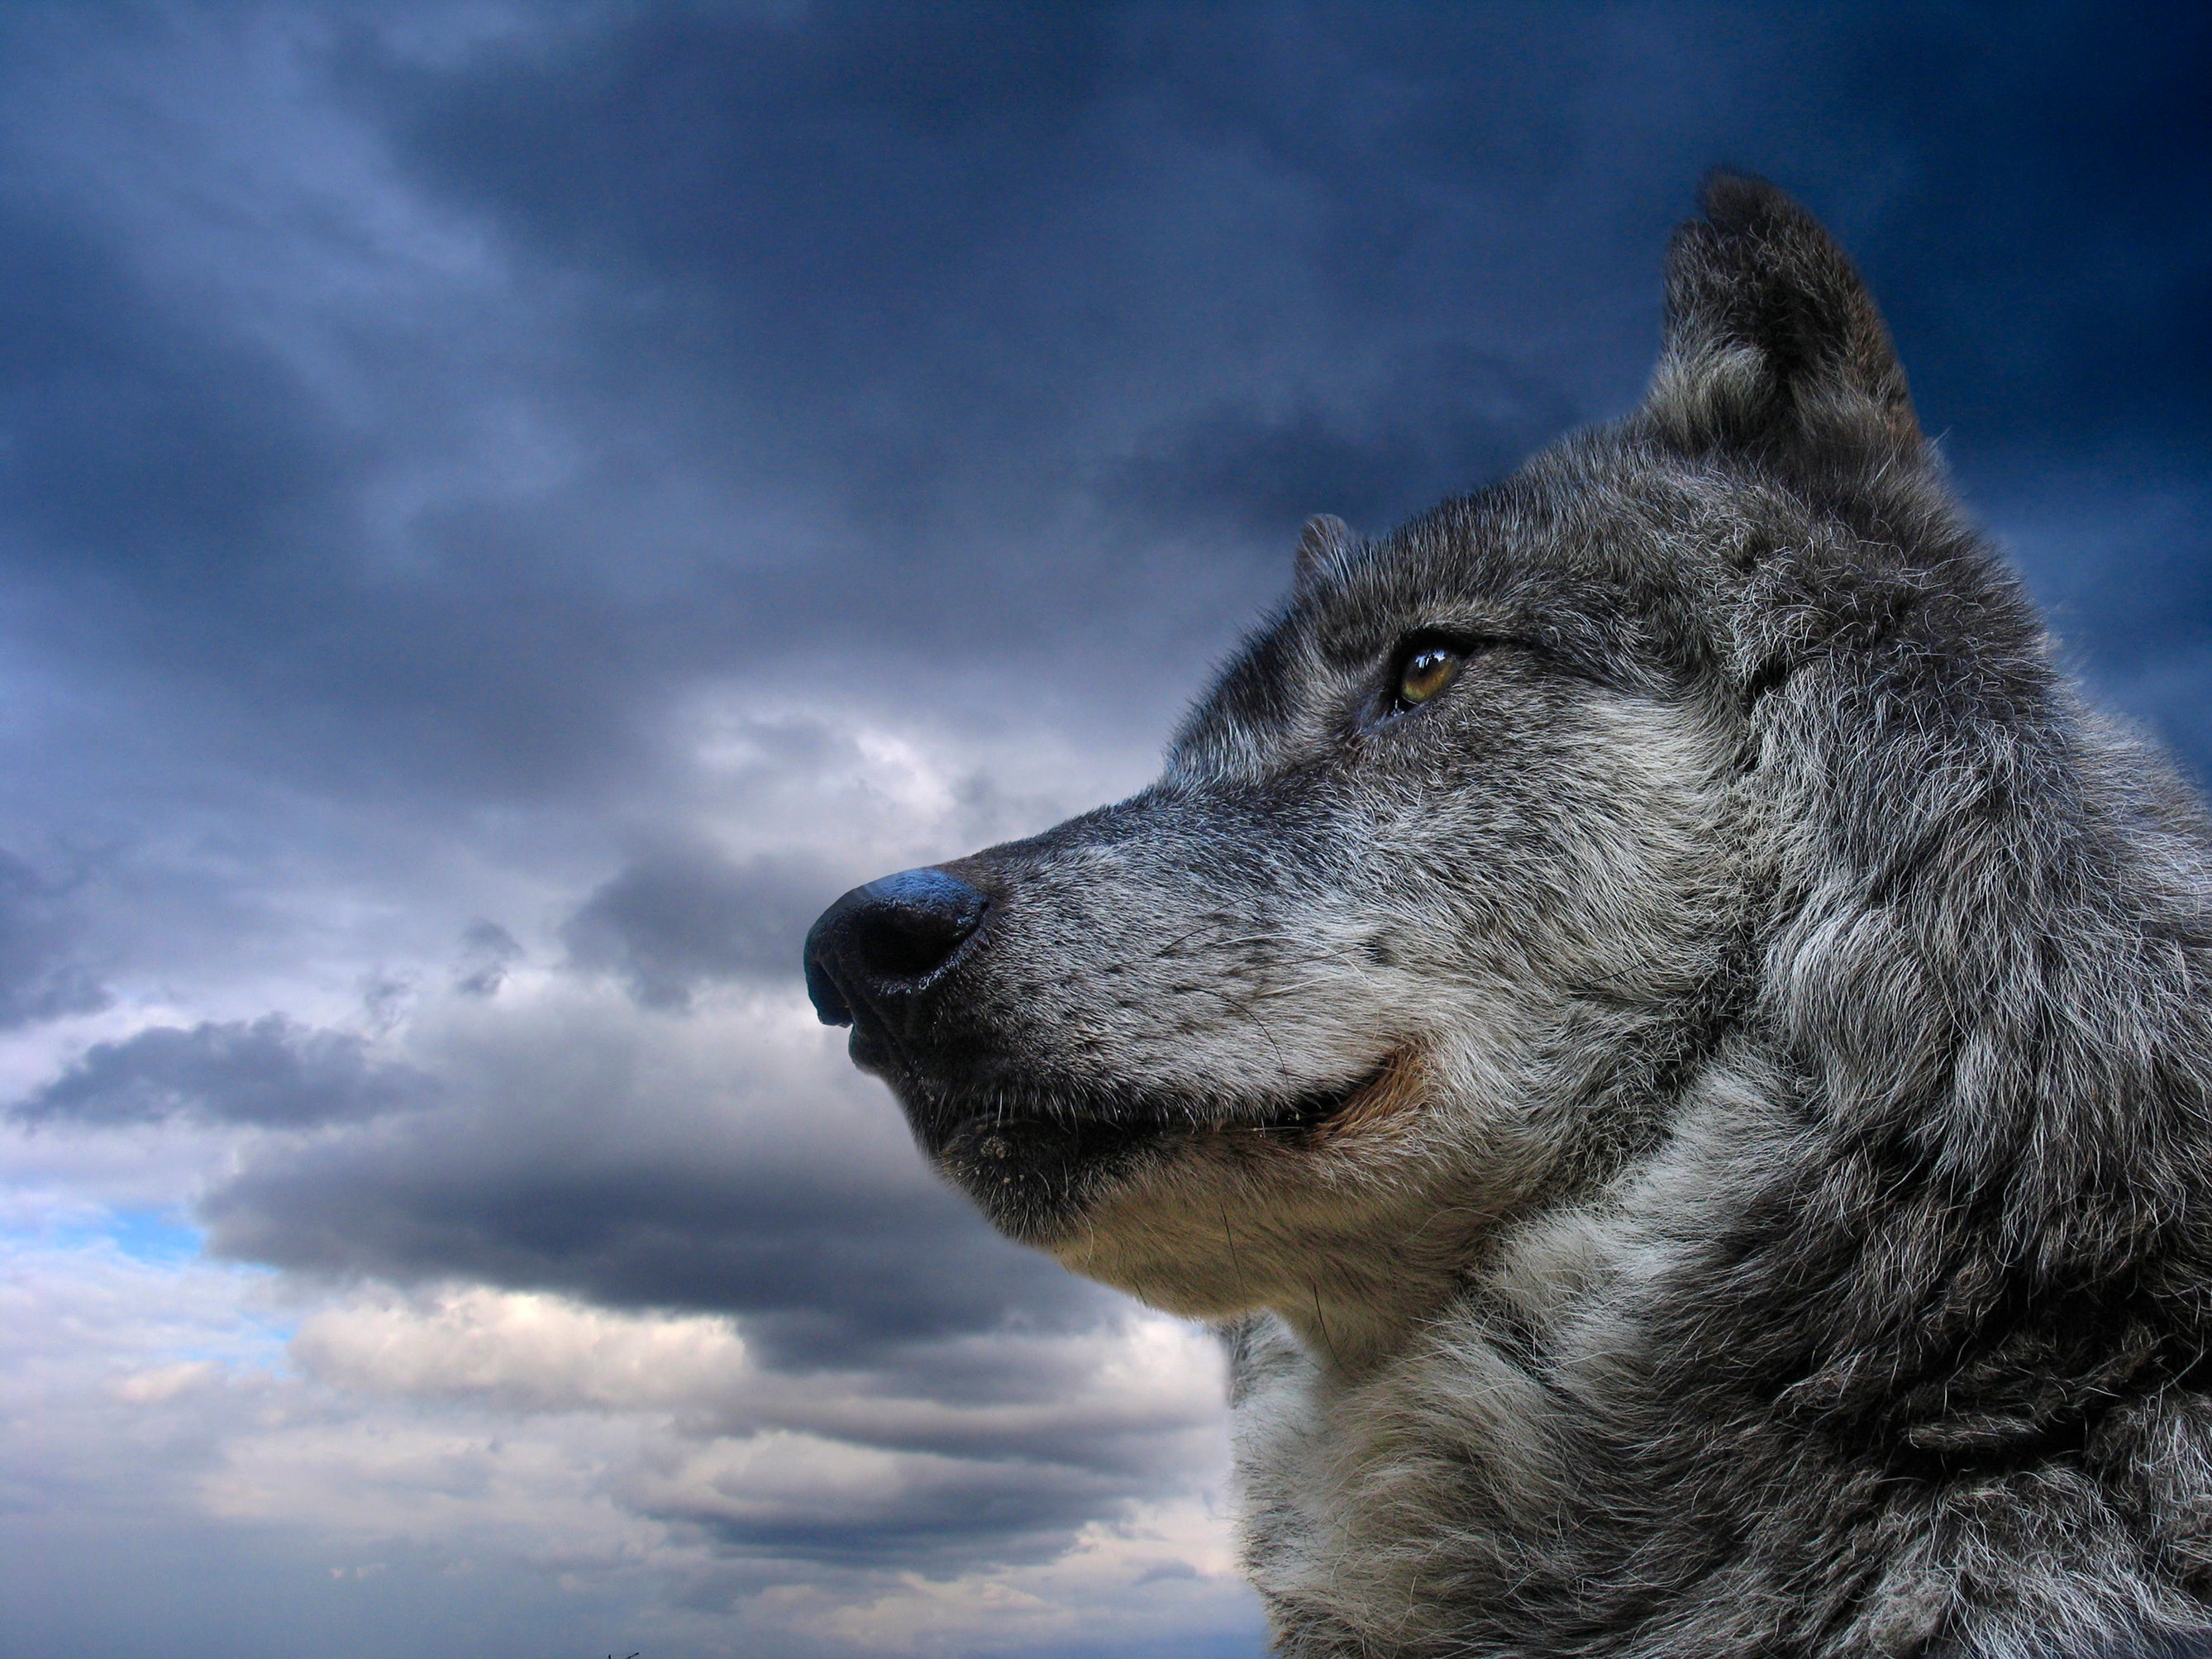 wolf portrait